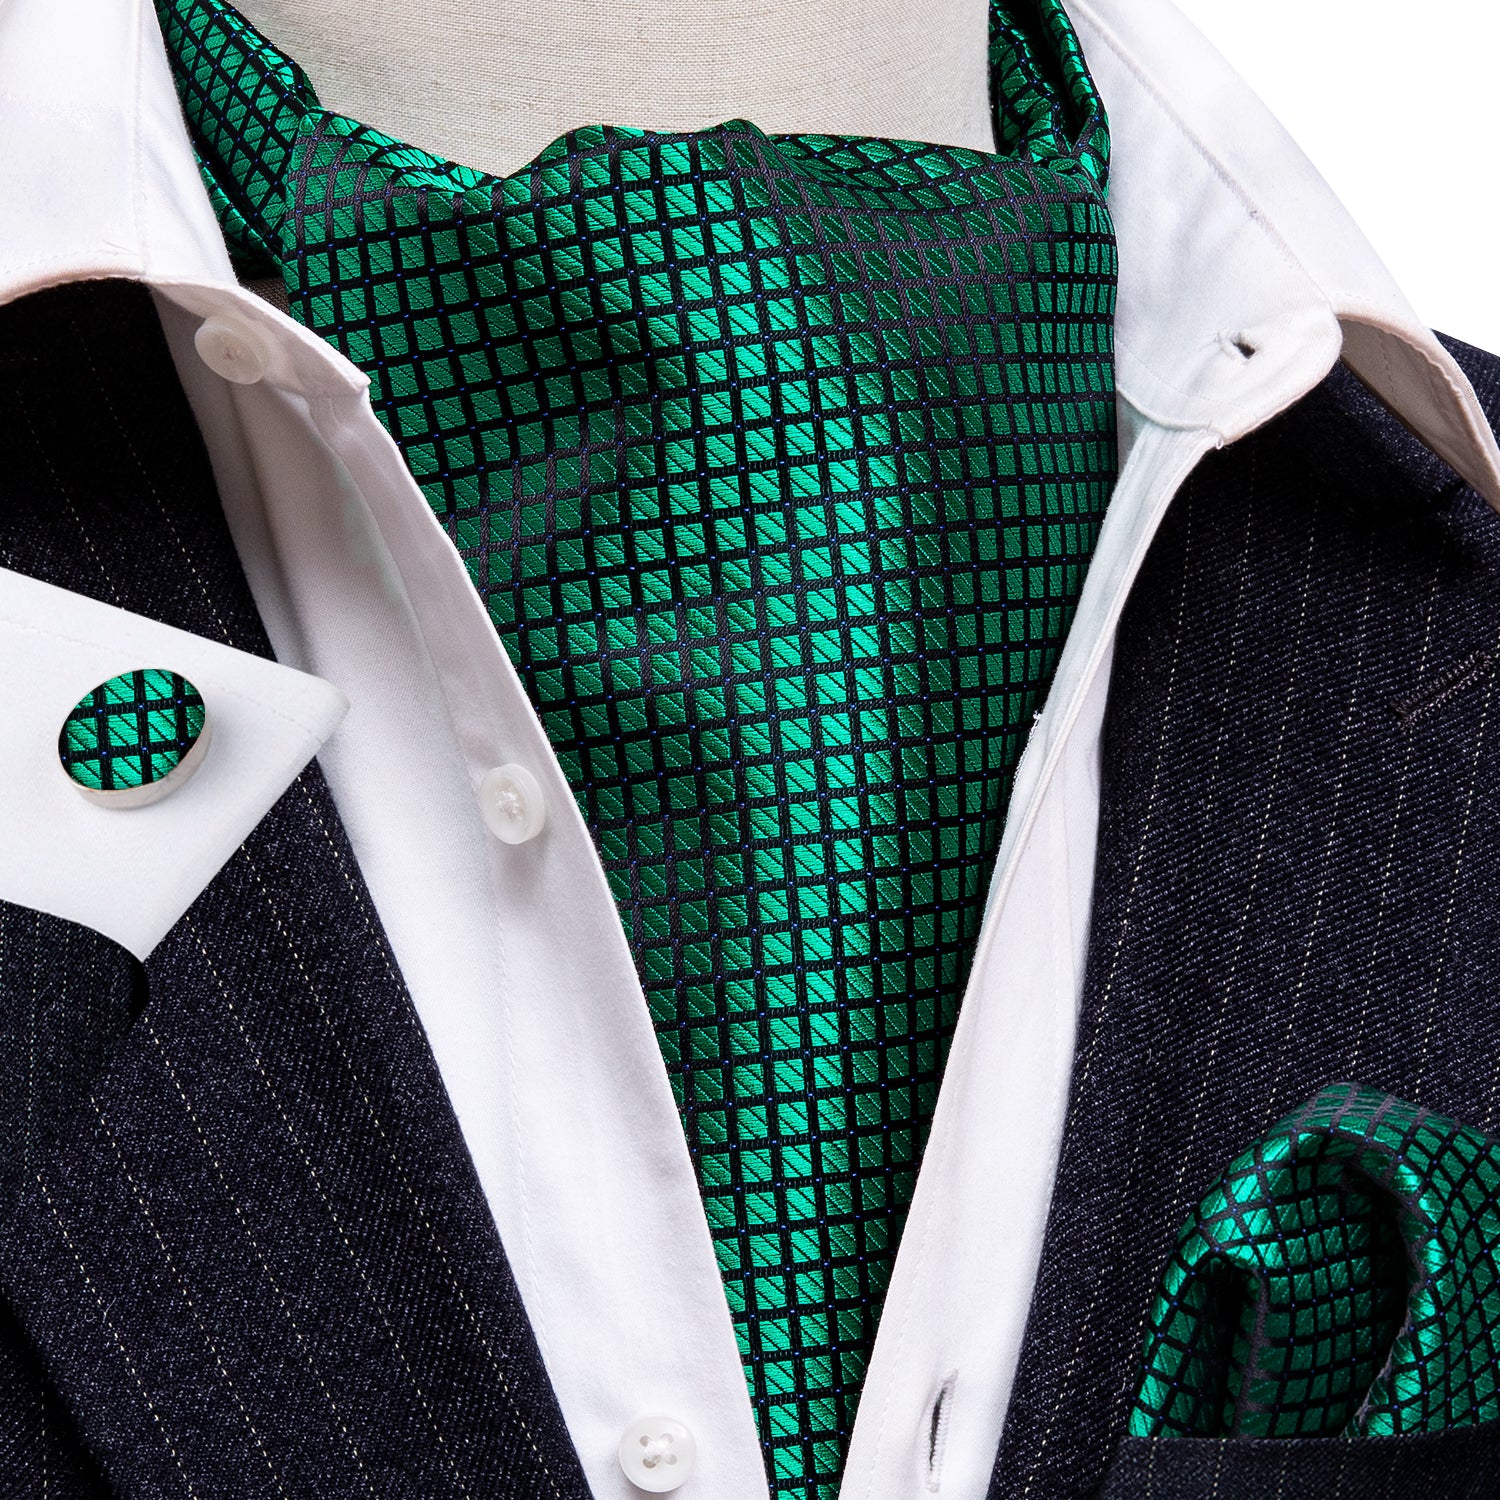 Green Plaid  Ascot Handkerchief Cufflinks